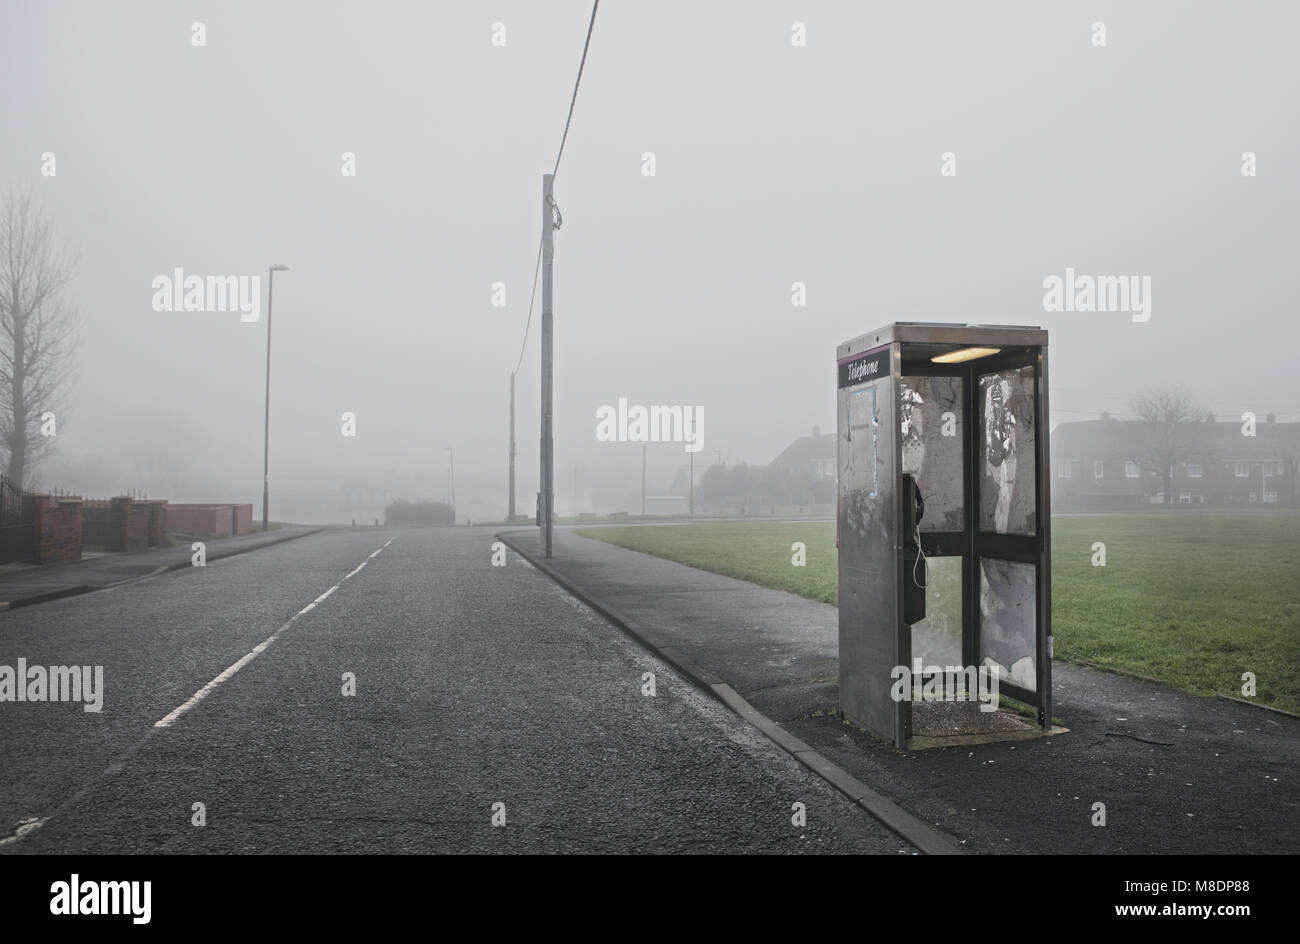 Phone box along roadside, Houghton-le-Spring, Sunderland, UK Stock Photo